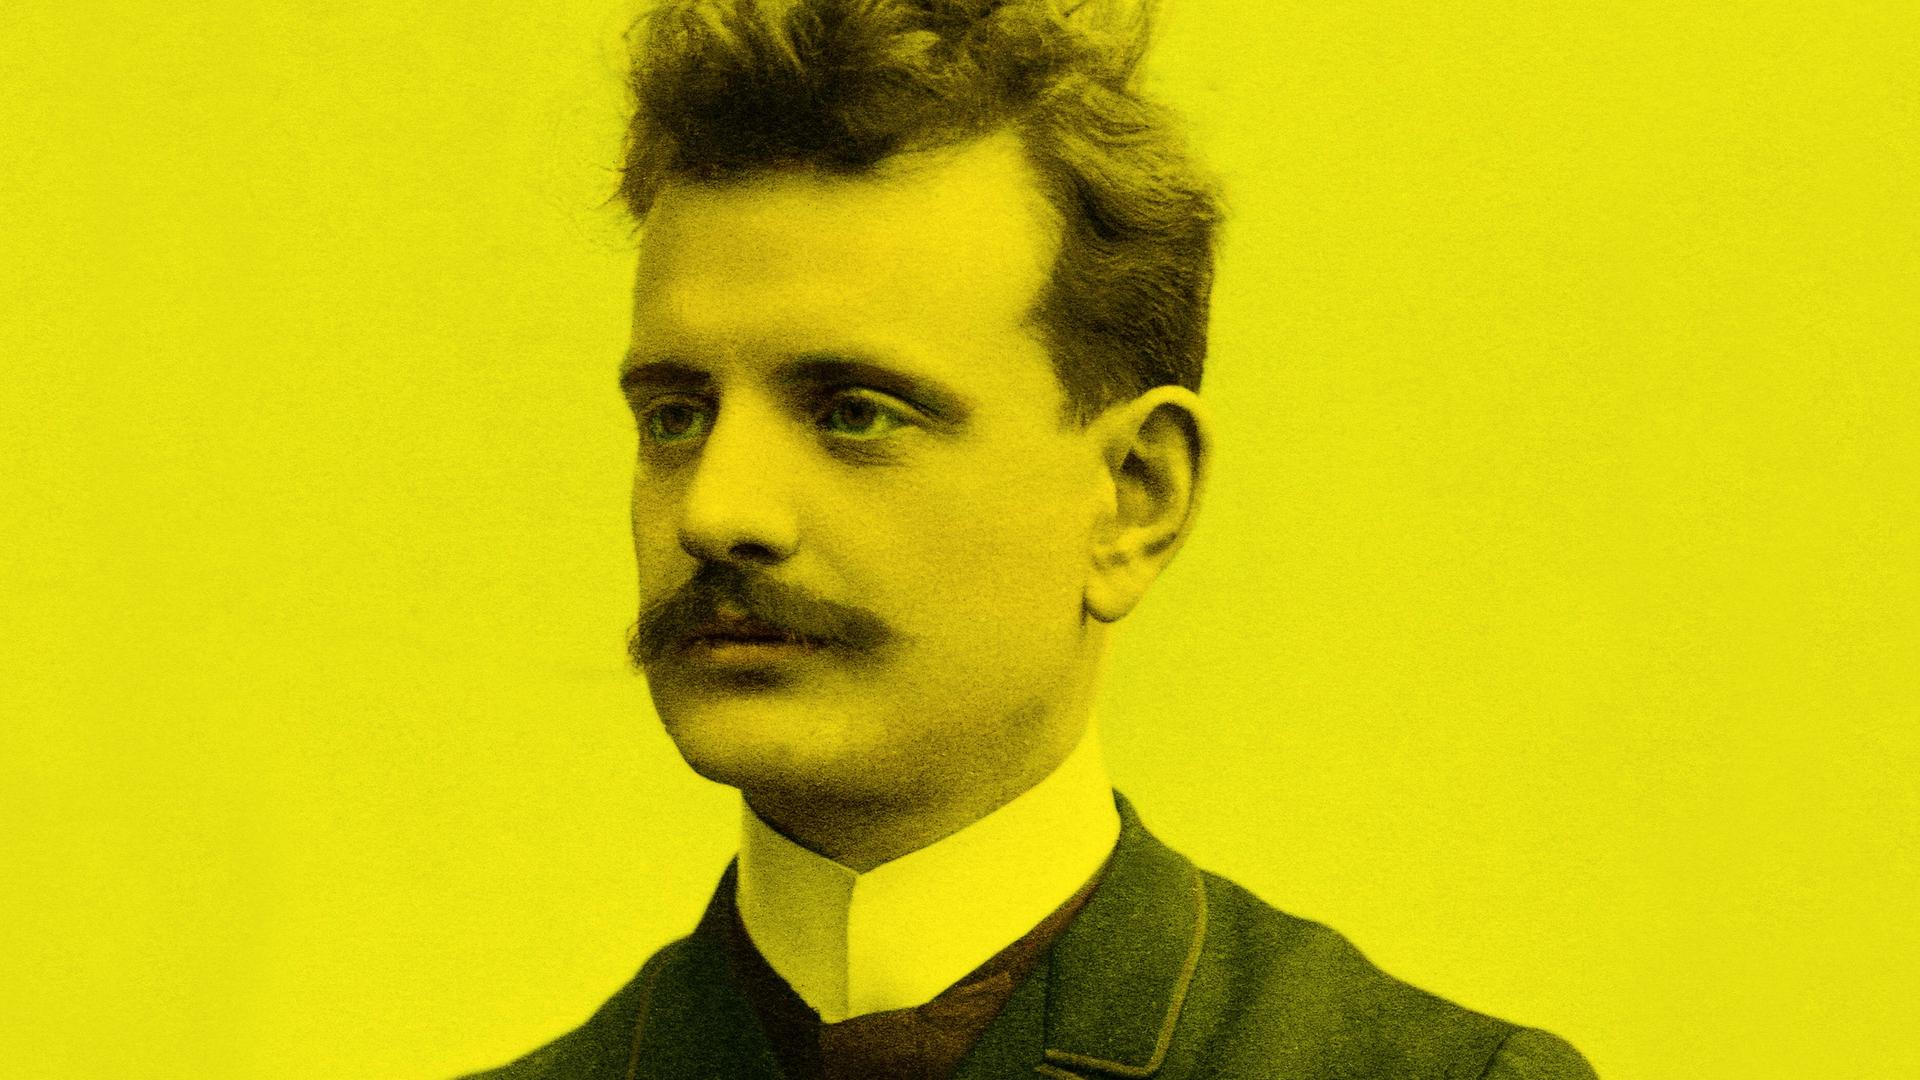 Farbig koloriertes, gelb eingefärbtes Portrait von Jean Sibelius